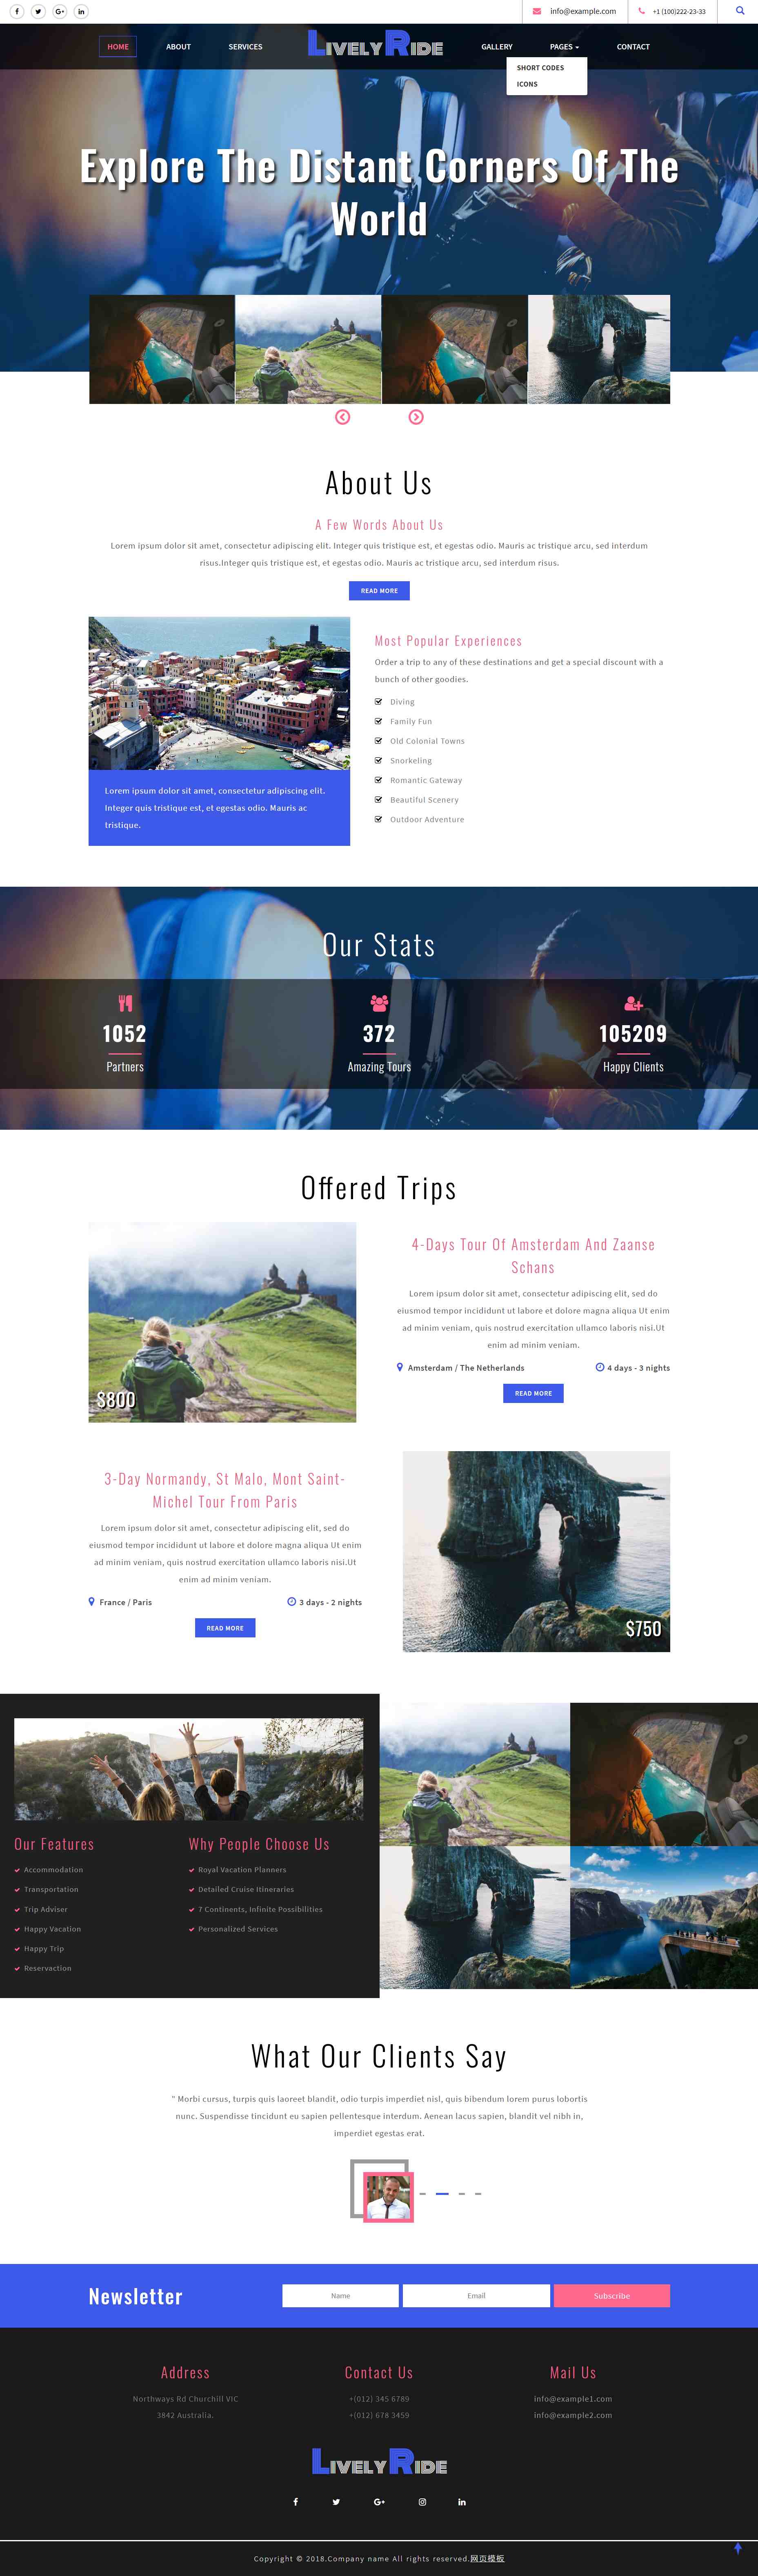 html5蓝色欧美风格探索世界旅游网页模板代码